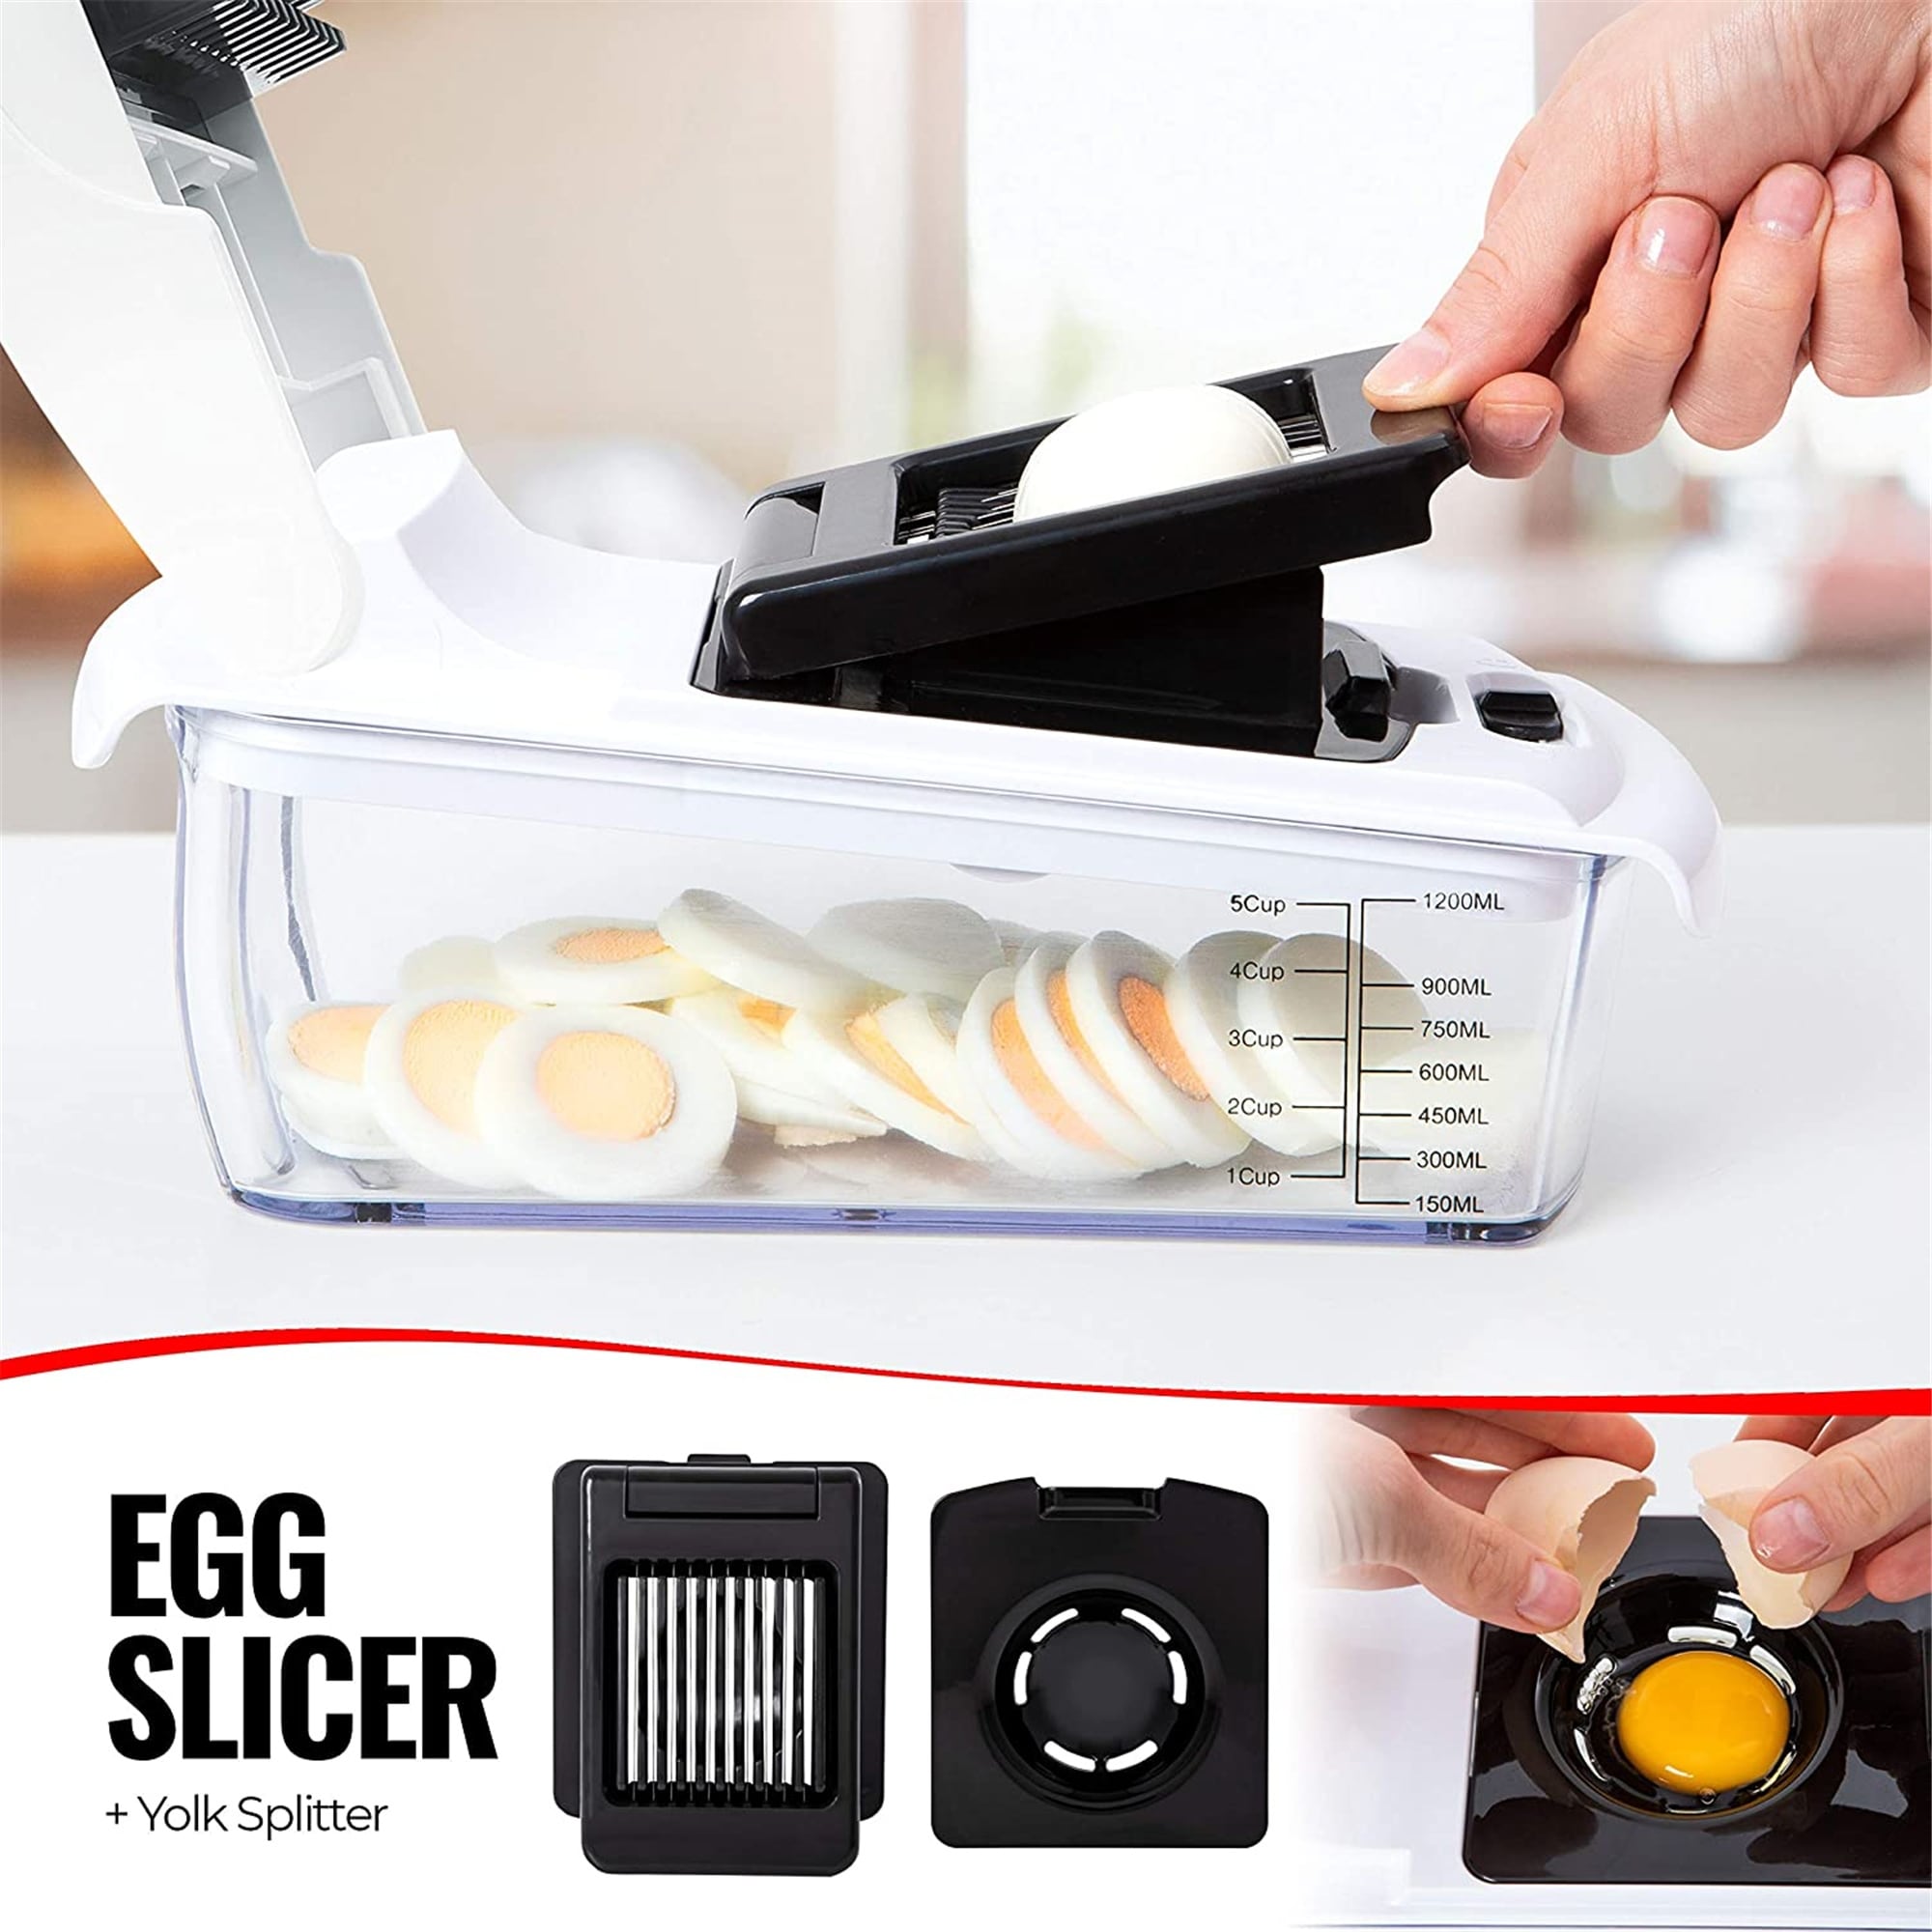 https://ak1.ostkcdn.com/images/products/is/images/direct/5af93971d5dc60b29345f43652f98c2255ecb59d/Vegetable-Chopper-Peeler-Food-Chopper-Salad-Chopper-Vegetable-Cutter-Spiralizer-Slicer-Lemon-Squeezer-Egg-Separator-Egg-Slicer.jpg